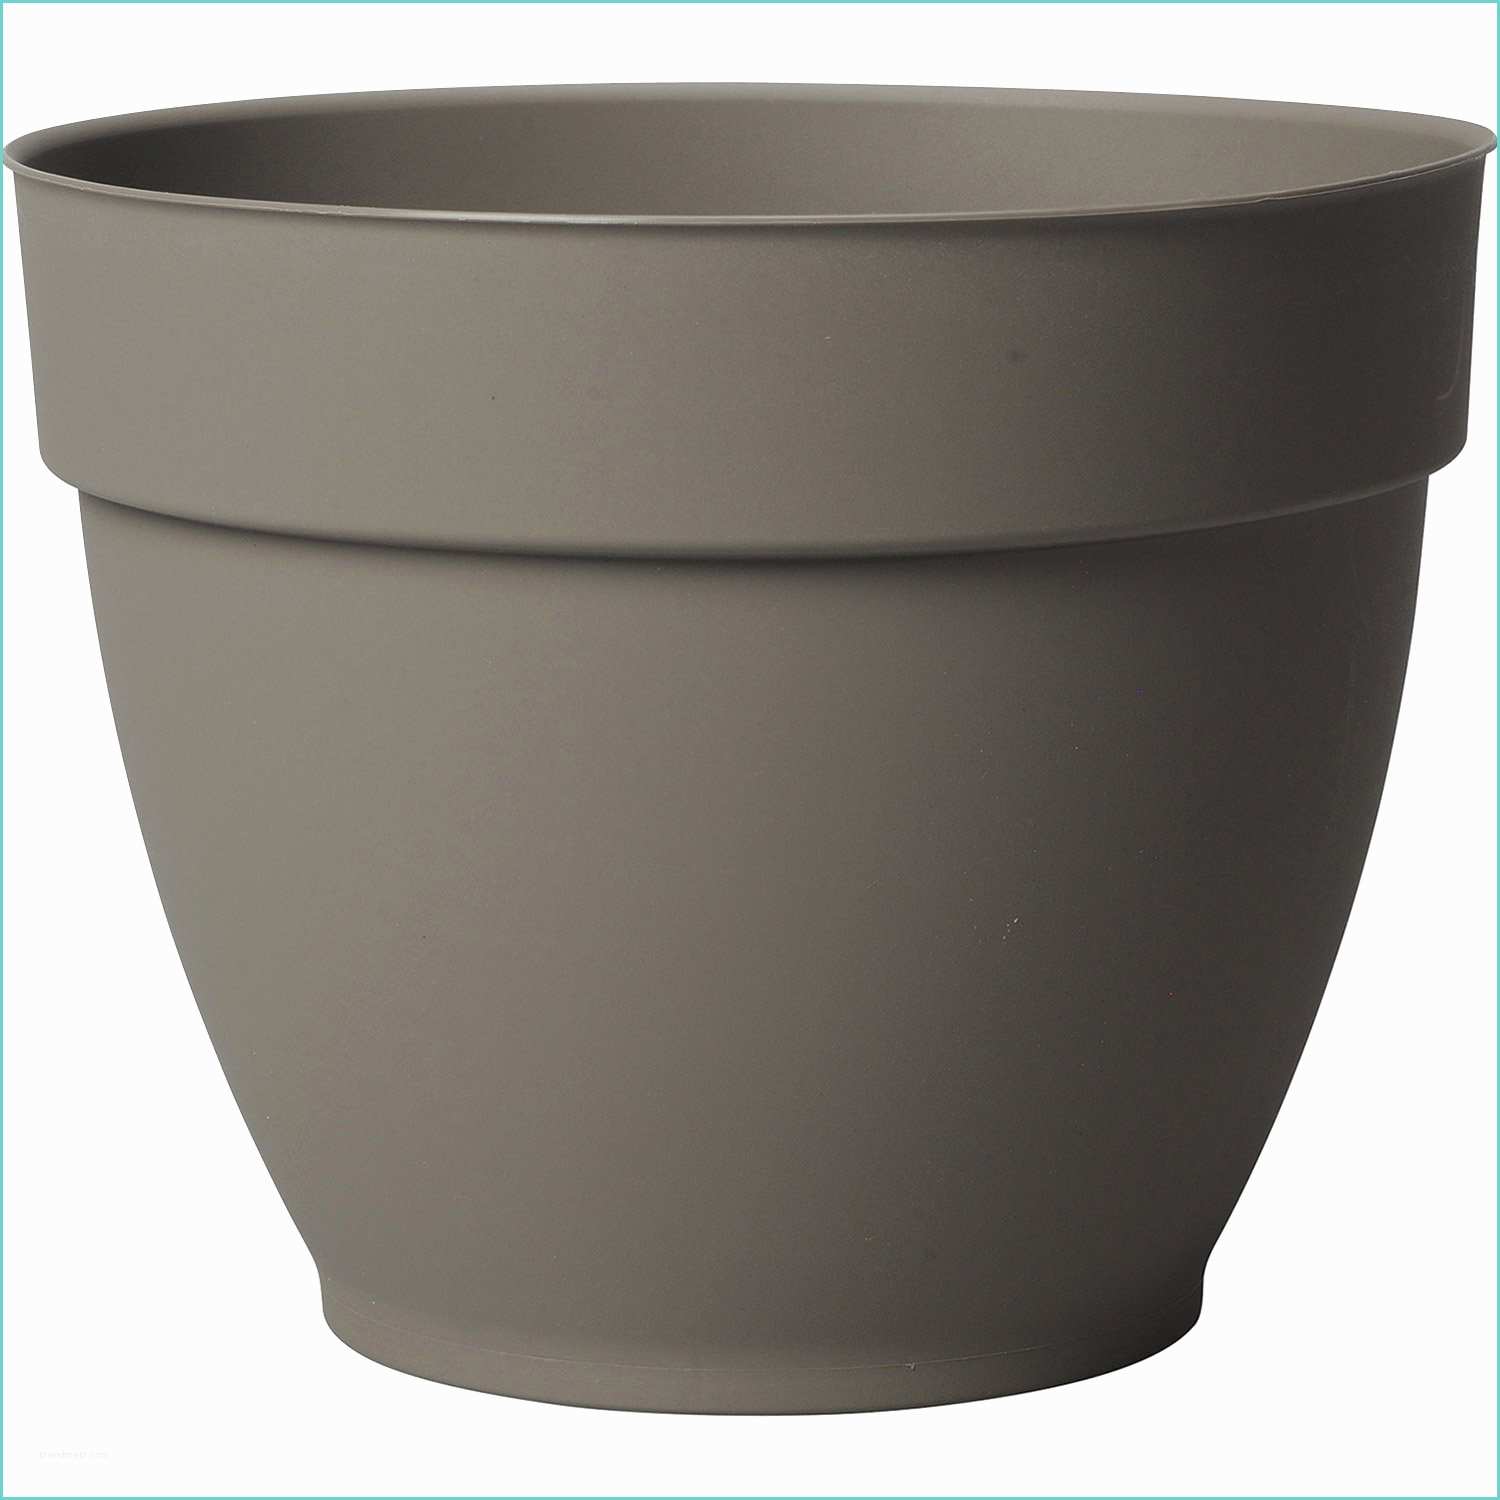 Pot A Reserve Deau Leroy Merlin Pot Plastique à Réserve D Eau Deroma Diam 33 8 X H 27 Cm